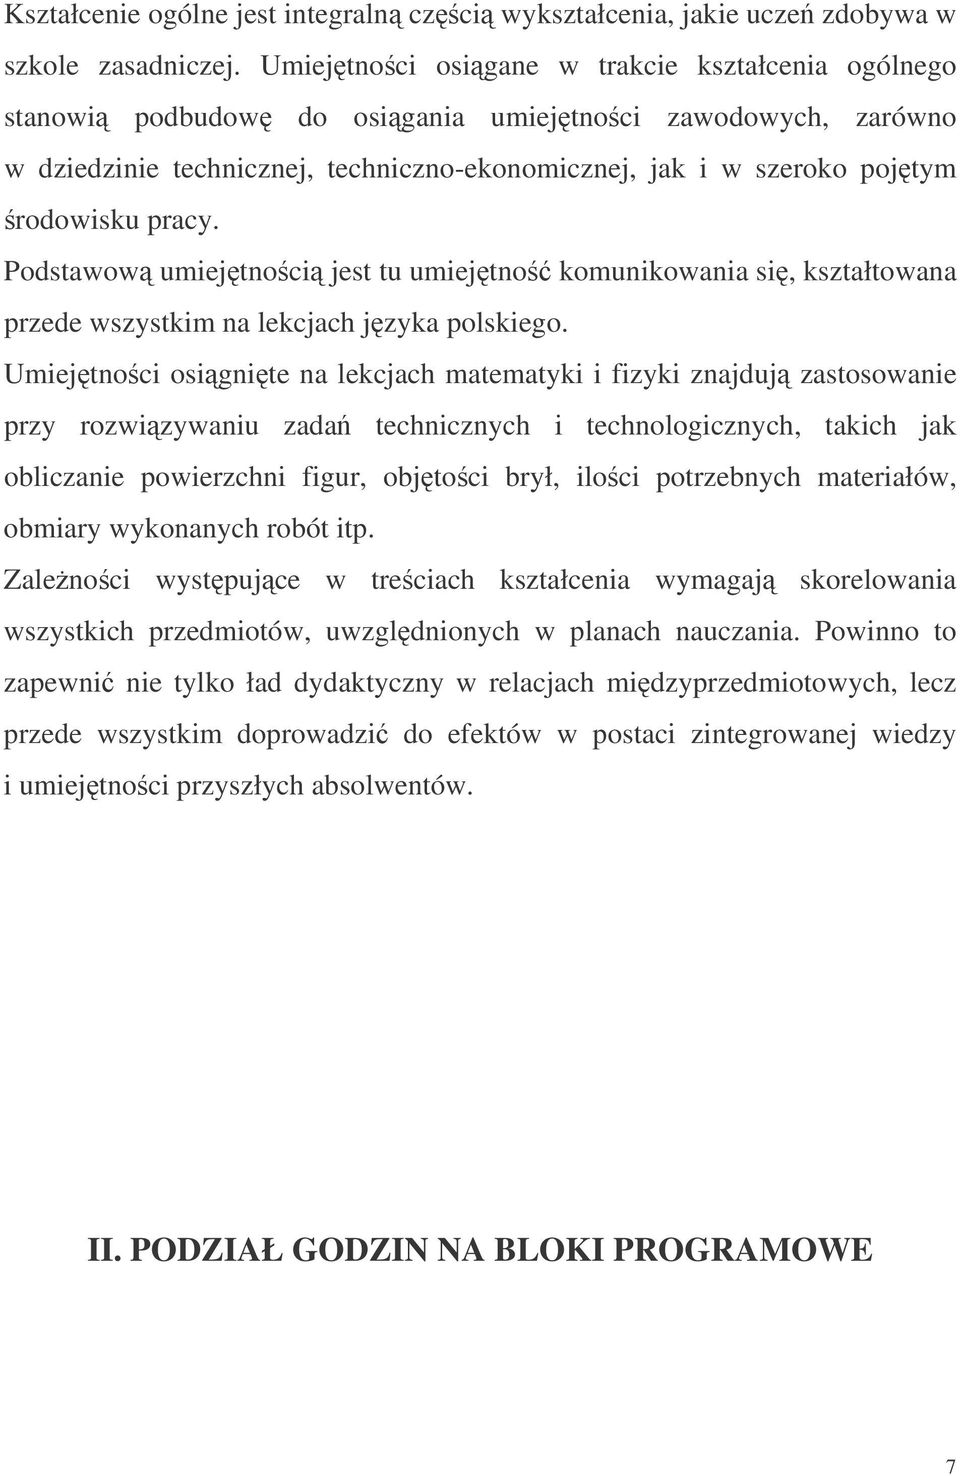 Podstawow umiejtnoci jest tu umiejtno komunikowania si, kształtowana przede wszystkim na lekcjach jzyka polskiego.